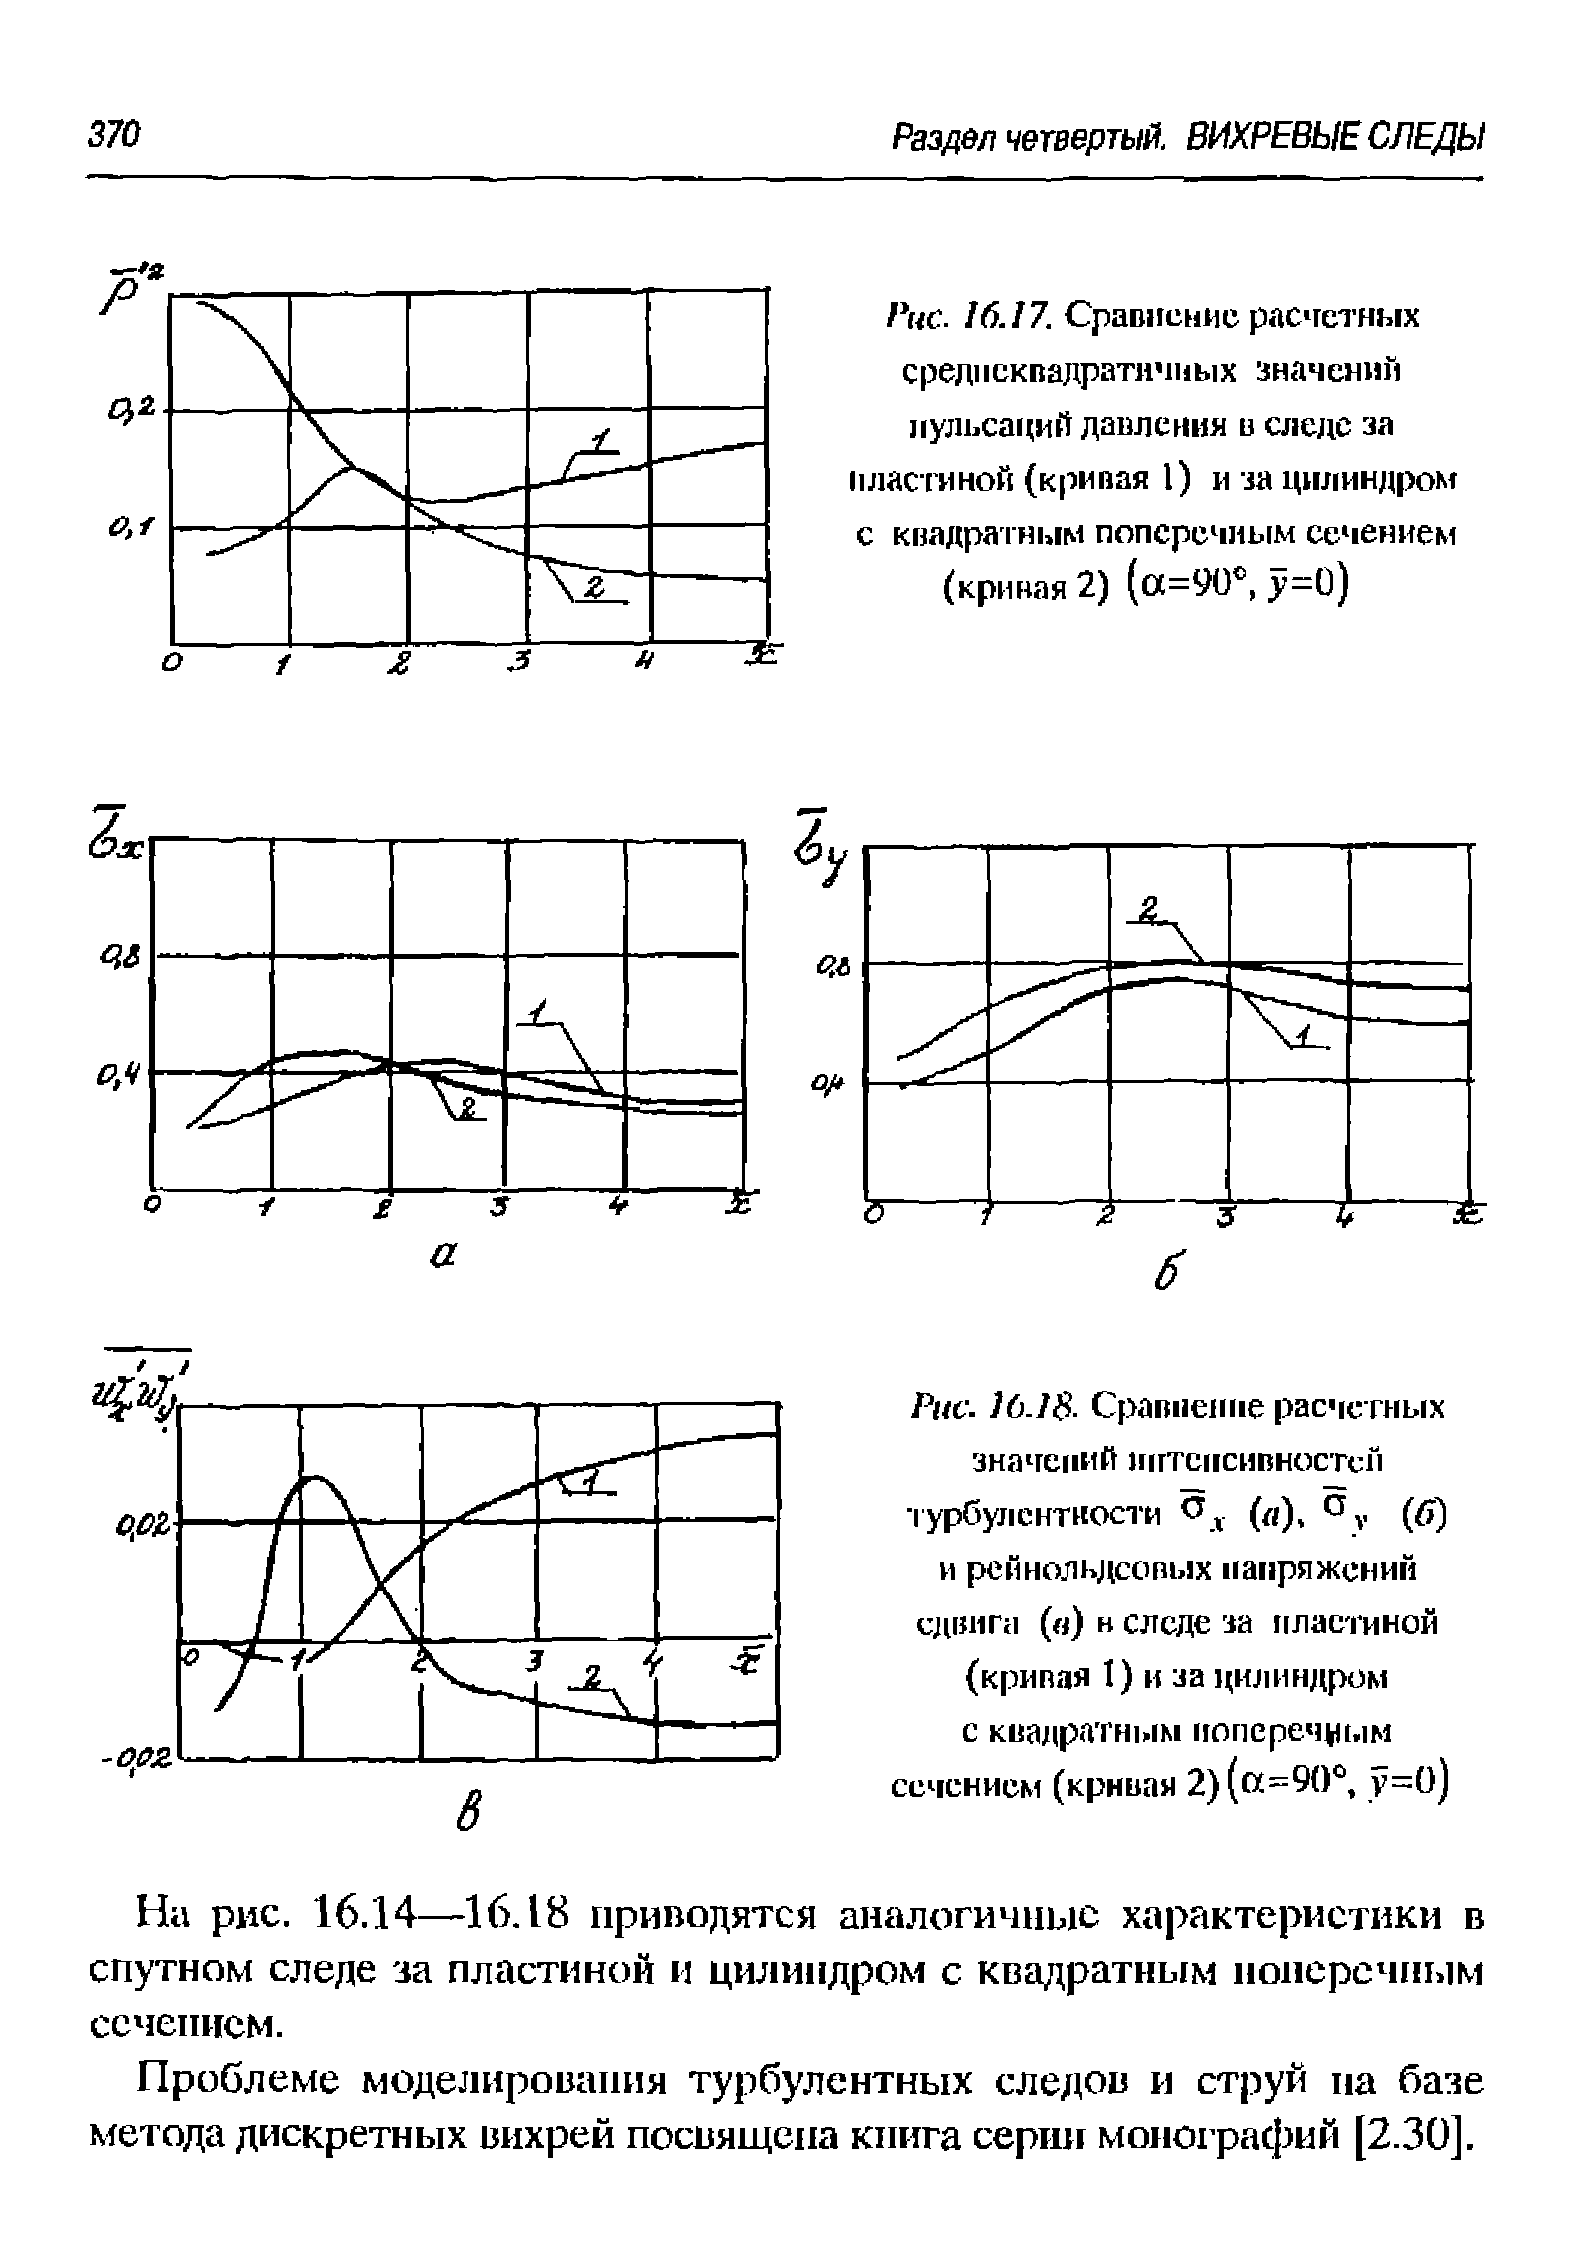 На рис. 16.14—16.18 приводятся аналогичные характеристики в спутном следе за пластиной и цилиндром с квадратным нонеречным ссченисм.
